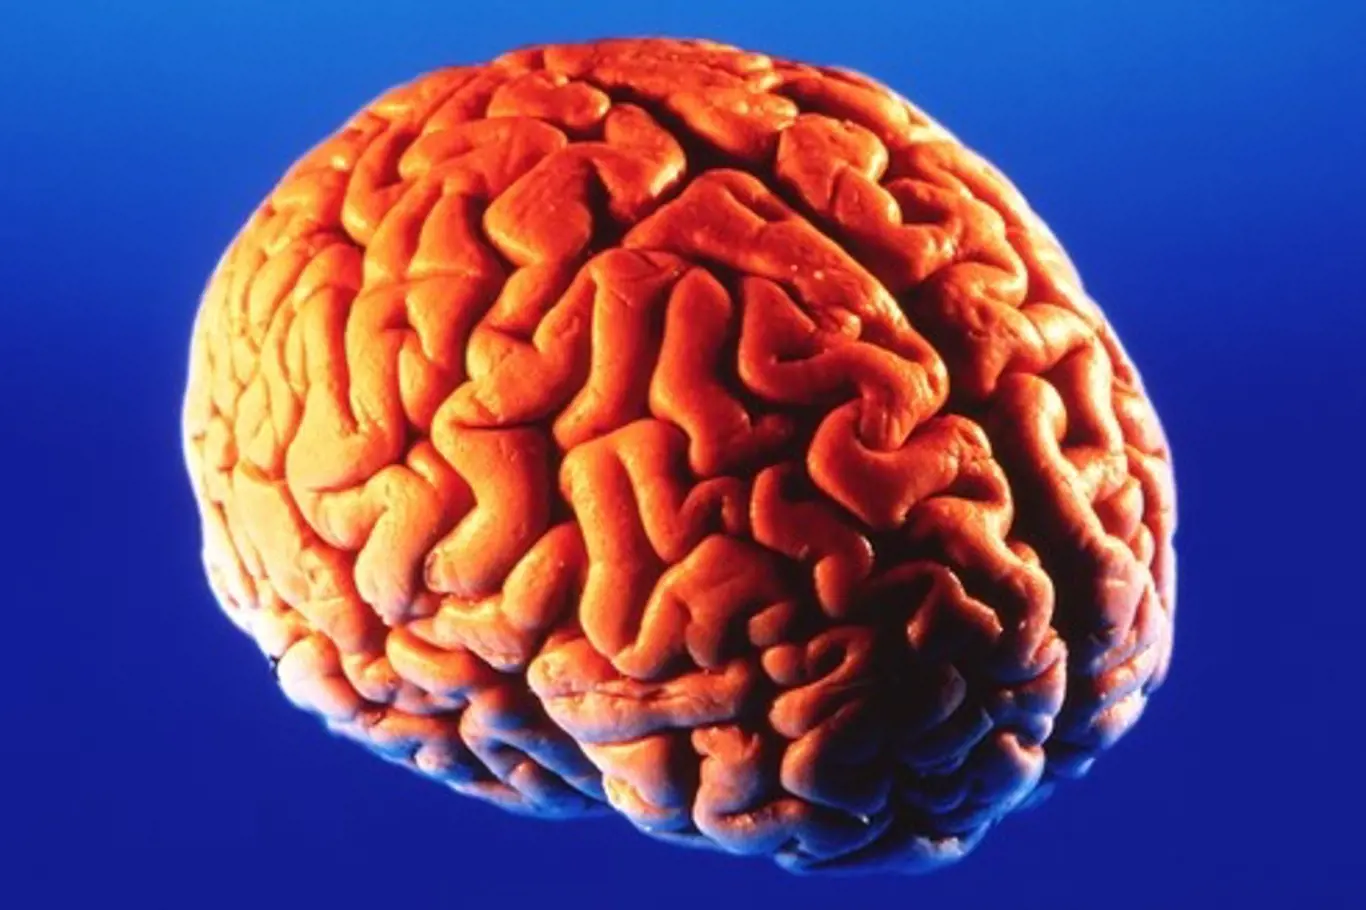 Lidský mozek (encephalon) je řídící a integrační orgán nervové soustavy člověka.